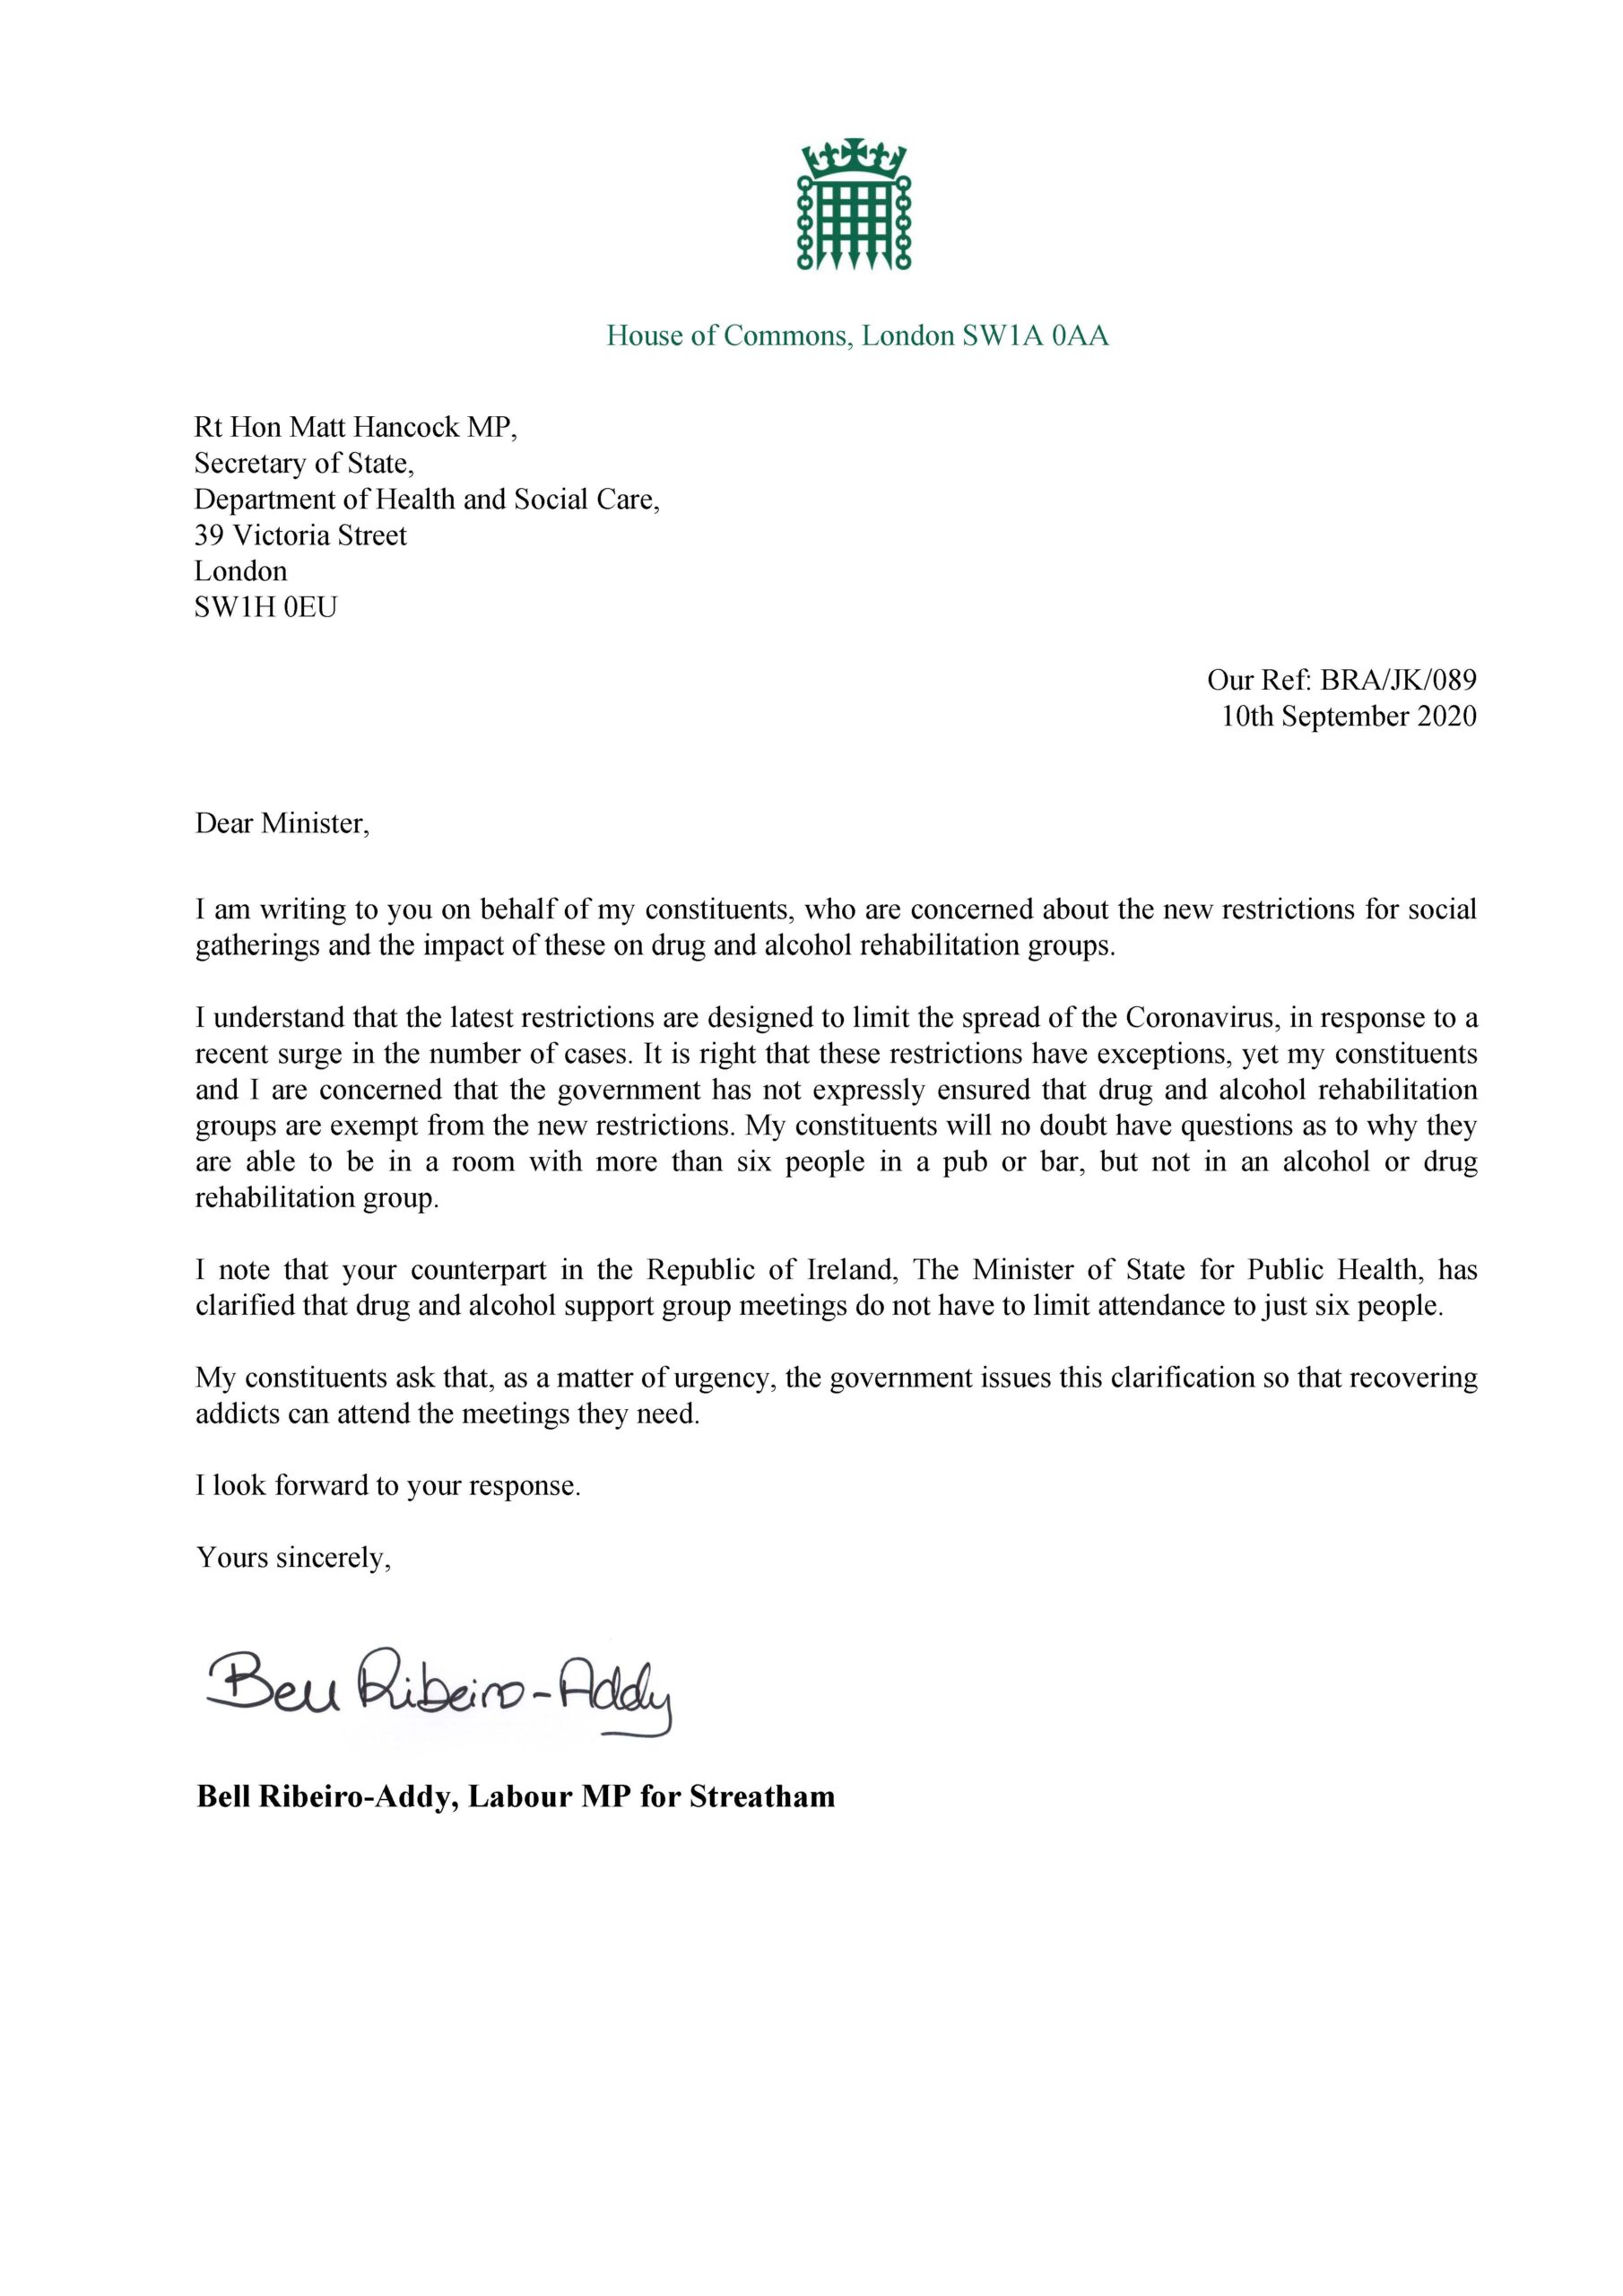 Letter to the Health Secretary - 15th September 15 - Bell